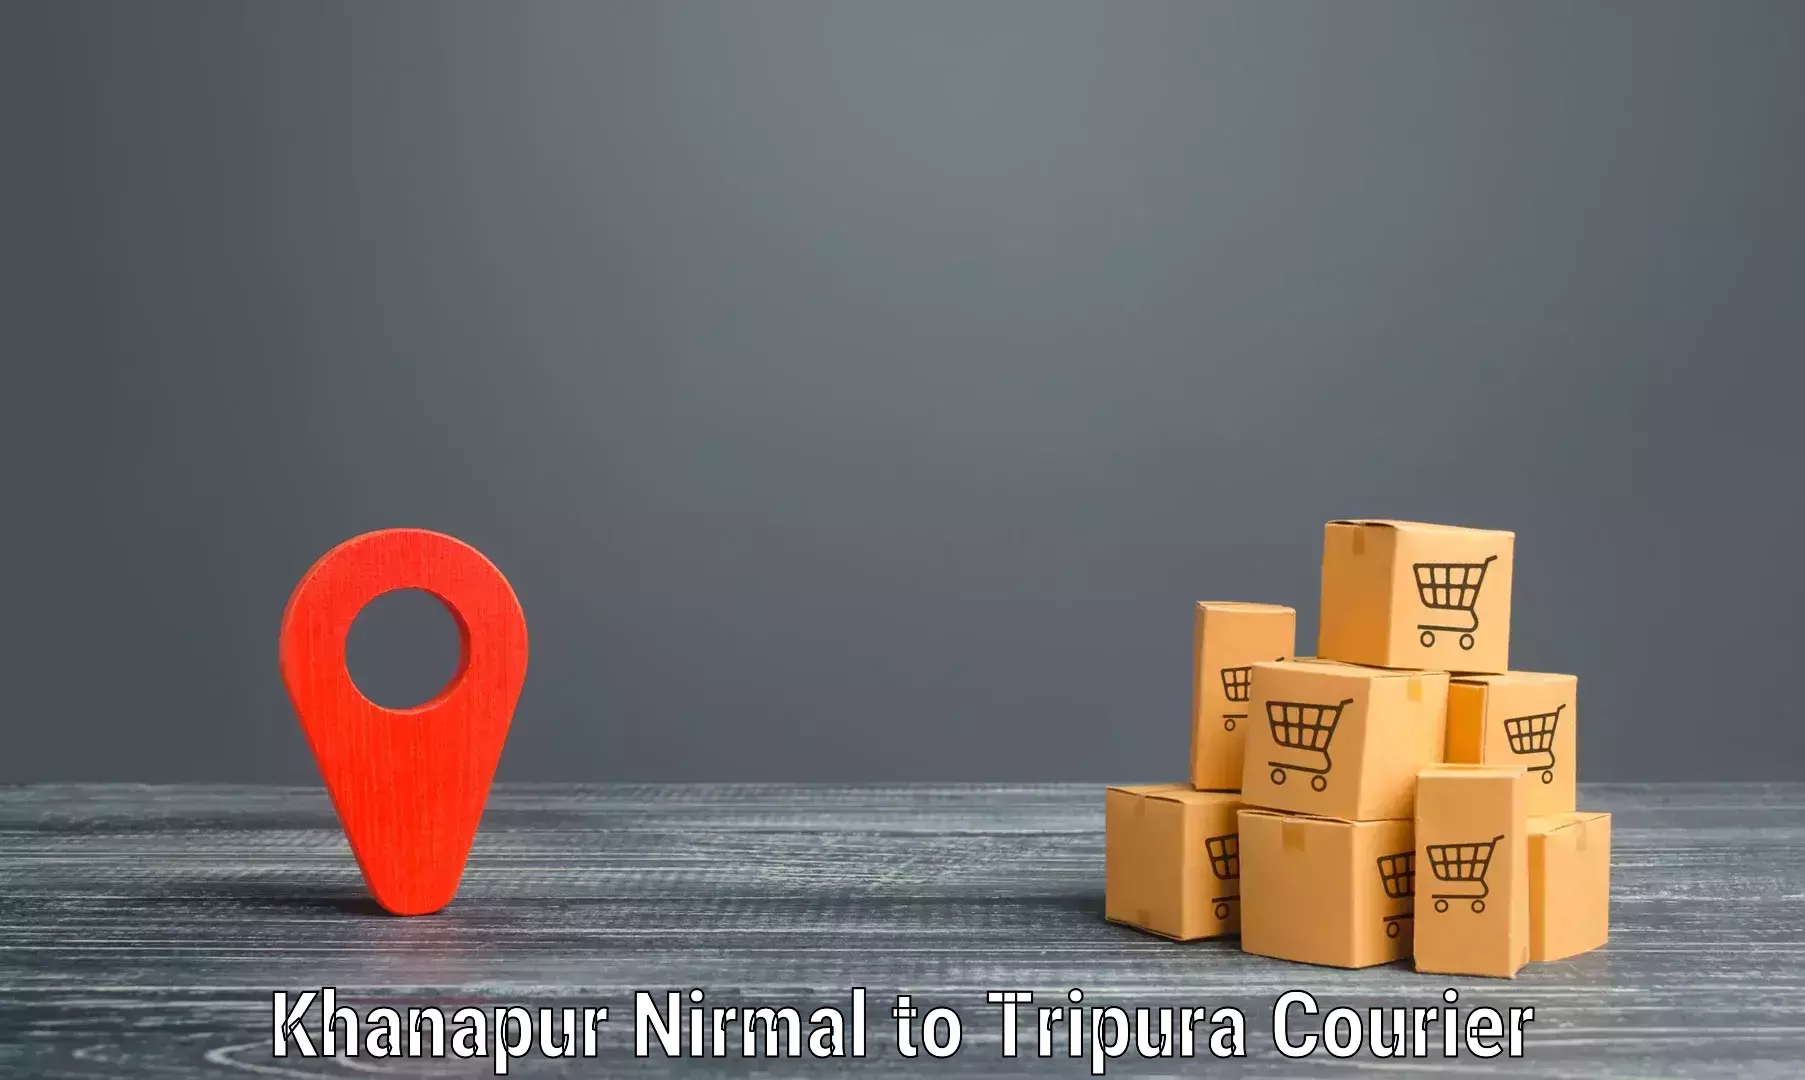 Express mail service Khanapur Nirmal to Amarpur Gomati